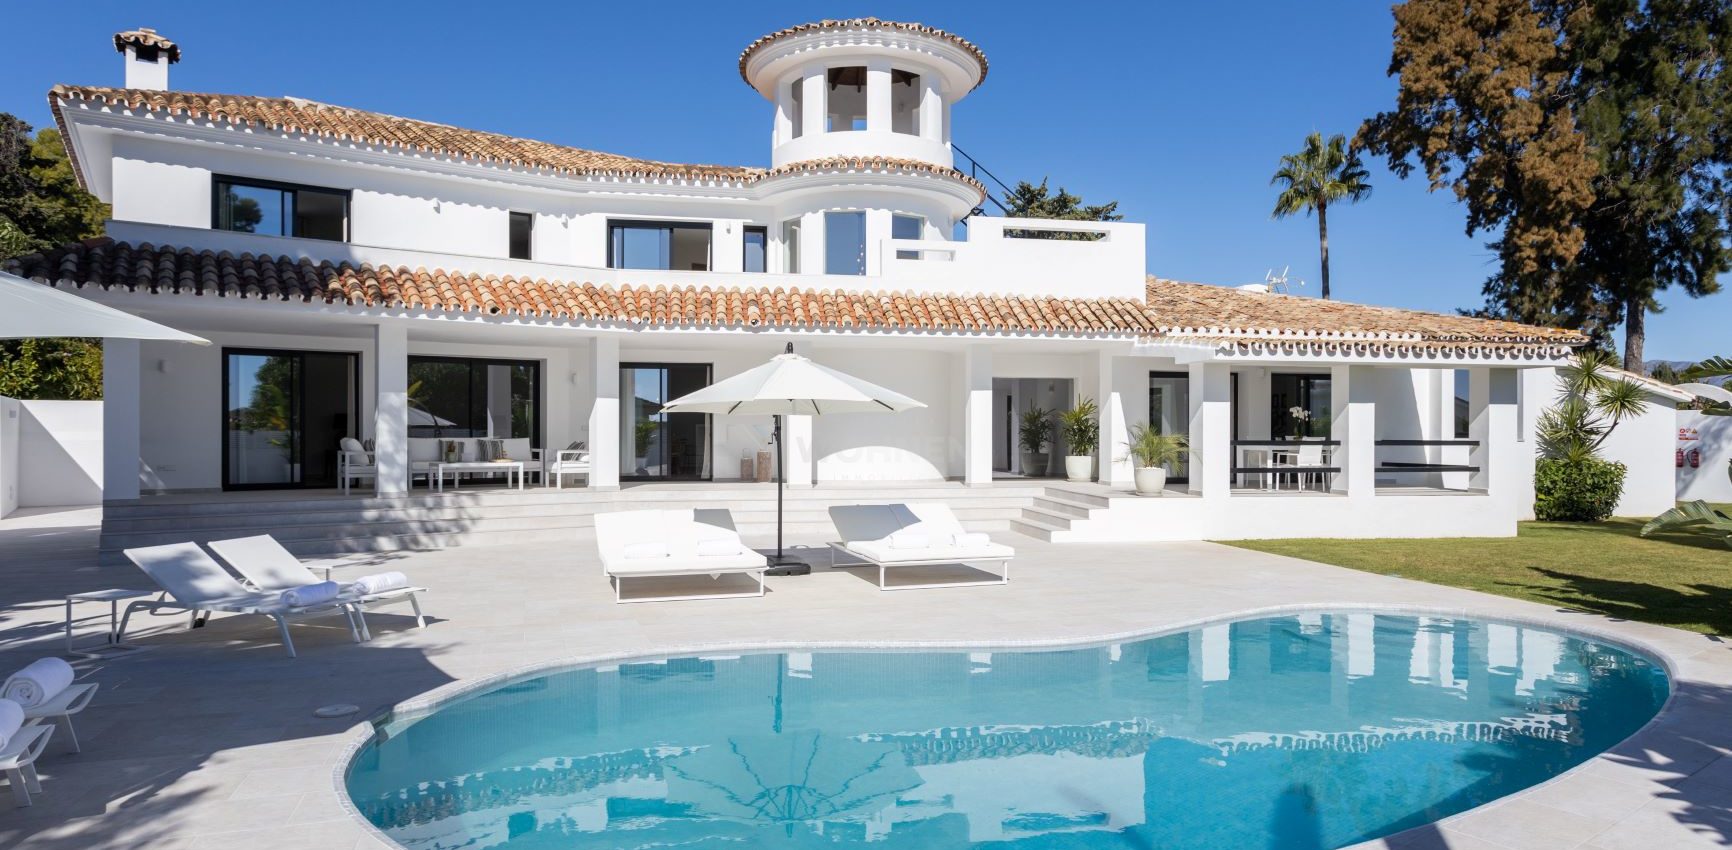 Mediterranean villa in modern style with sea views